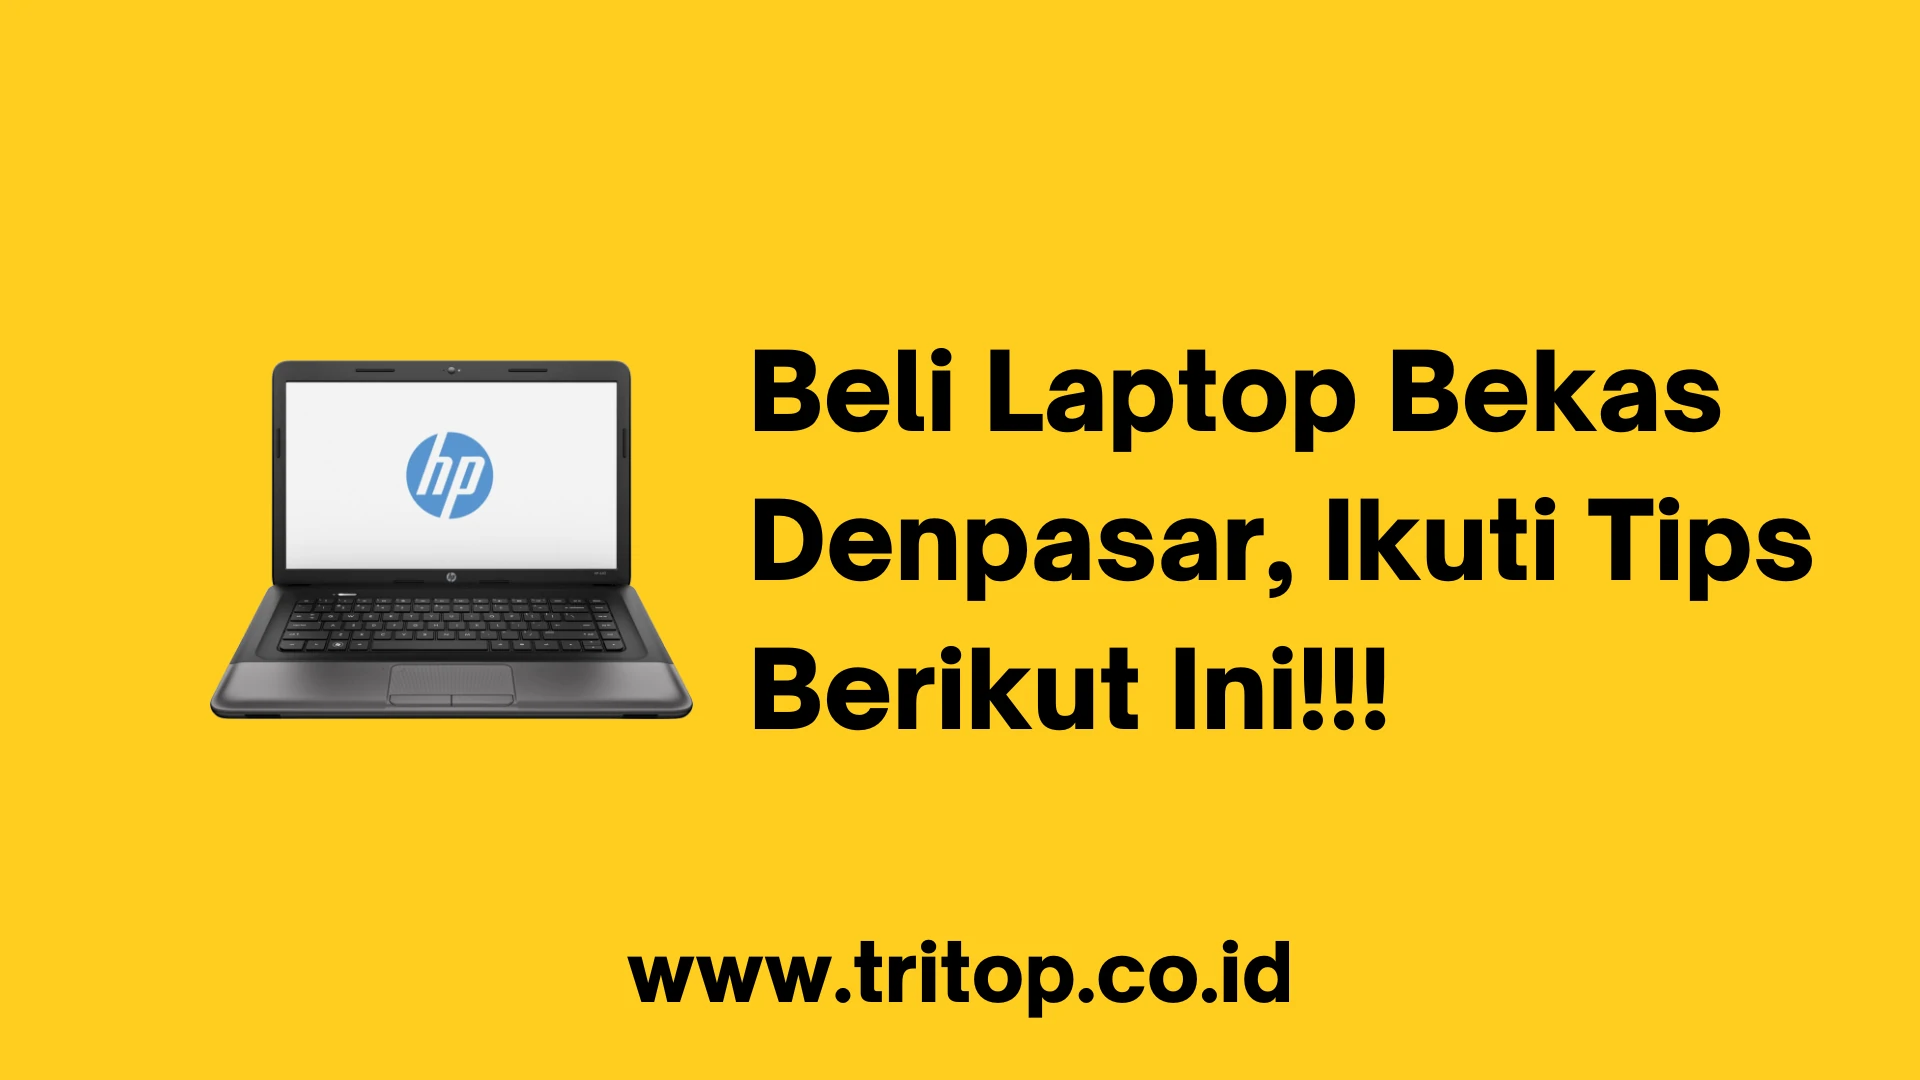 Beli Laptop Bekas Denpasar Online